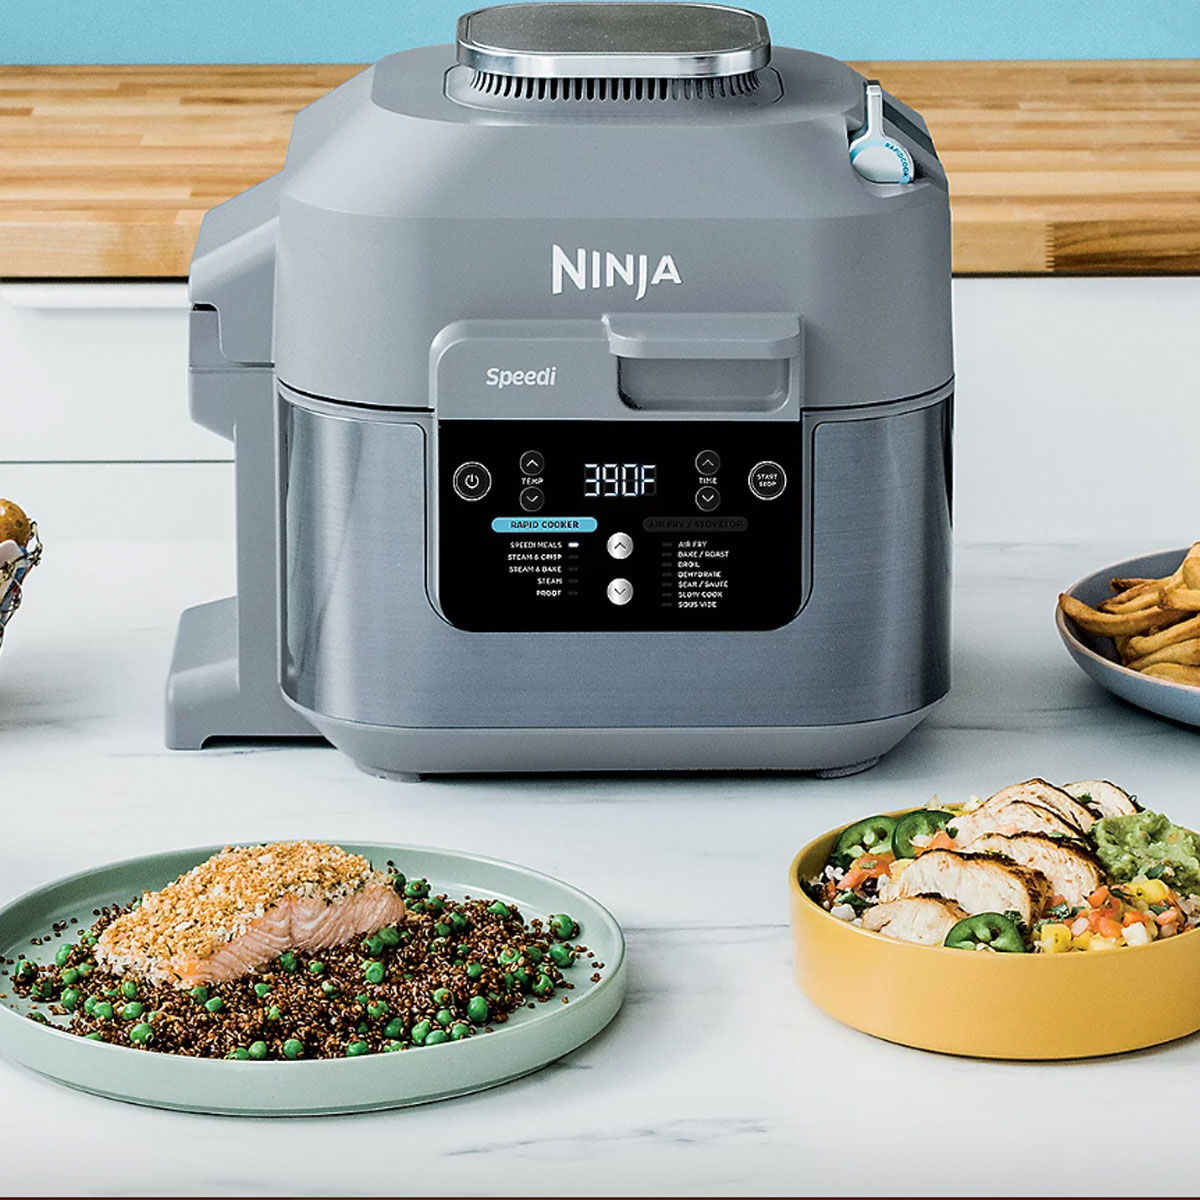 Ninja Speedi Air Fryer & Rapid Cooker